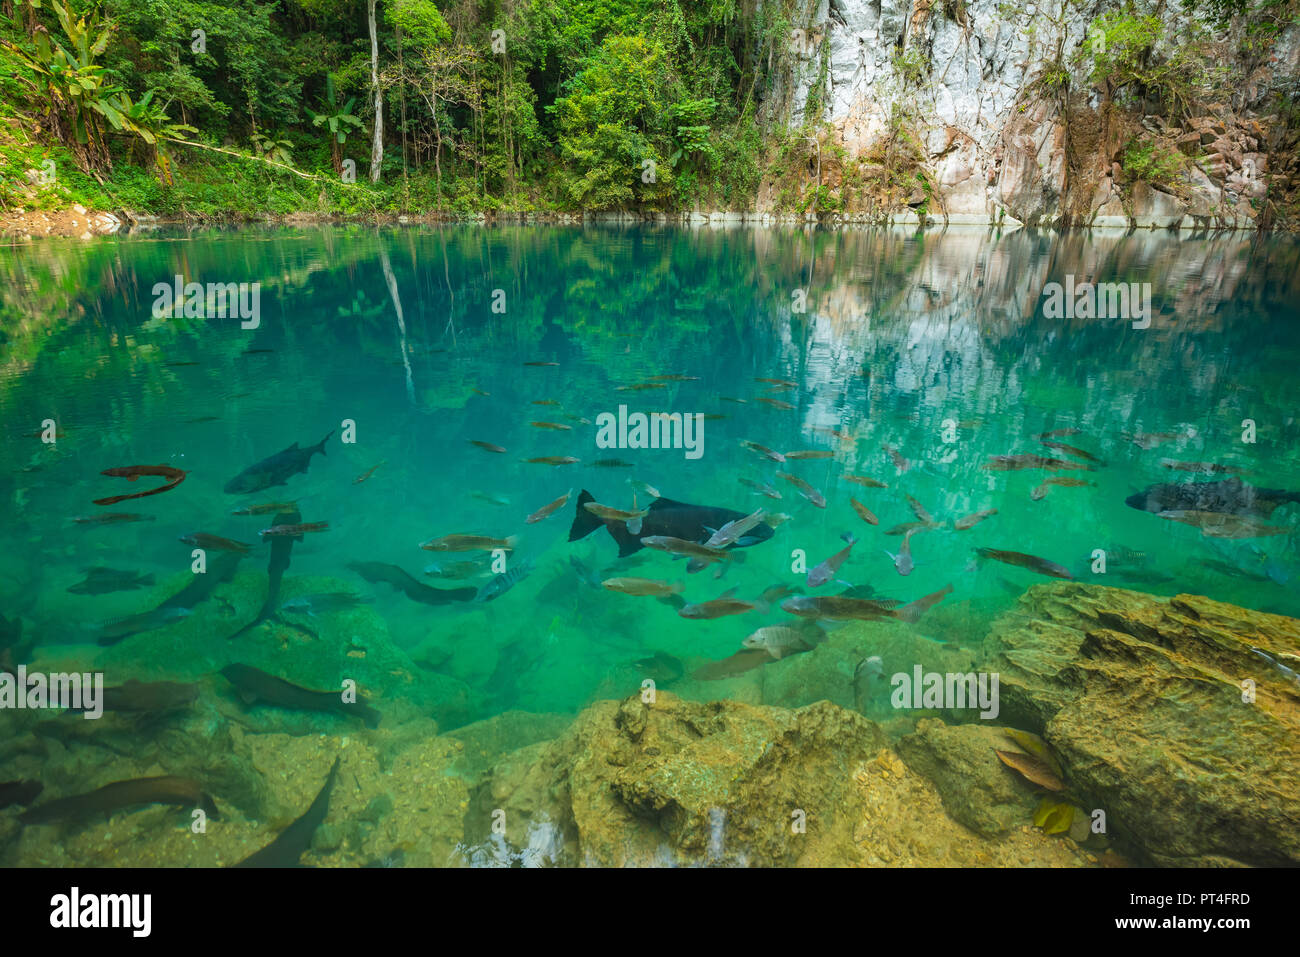 Phu Lom Kiew étang avec de l'eau claire comme du cristal et un groupe de poissons d'une célèbre attraction touristique de la province de Lampang, Thaïlande Banque D'Images